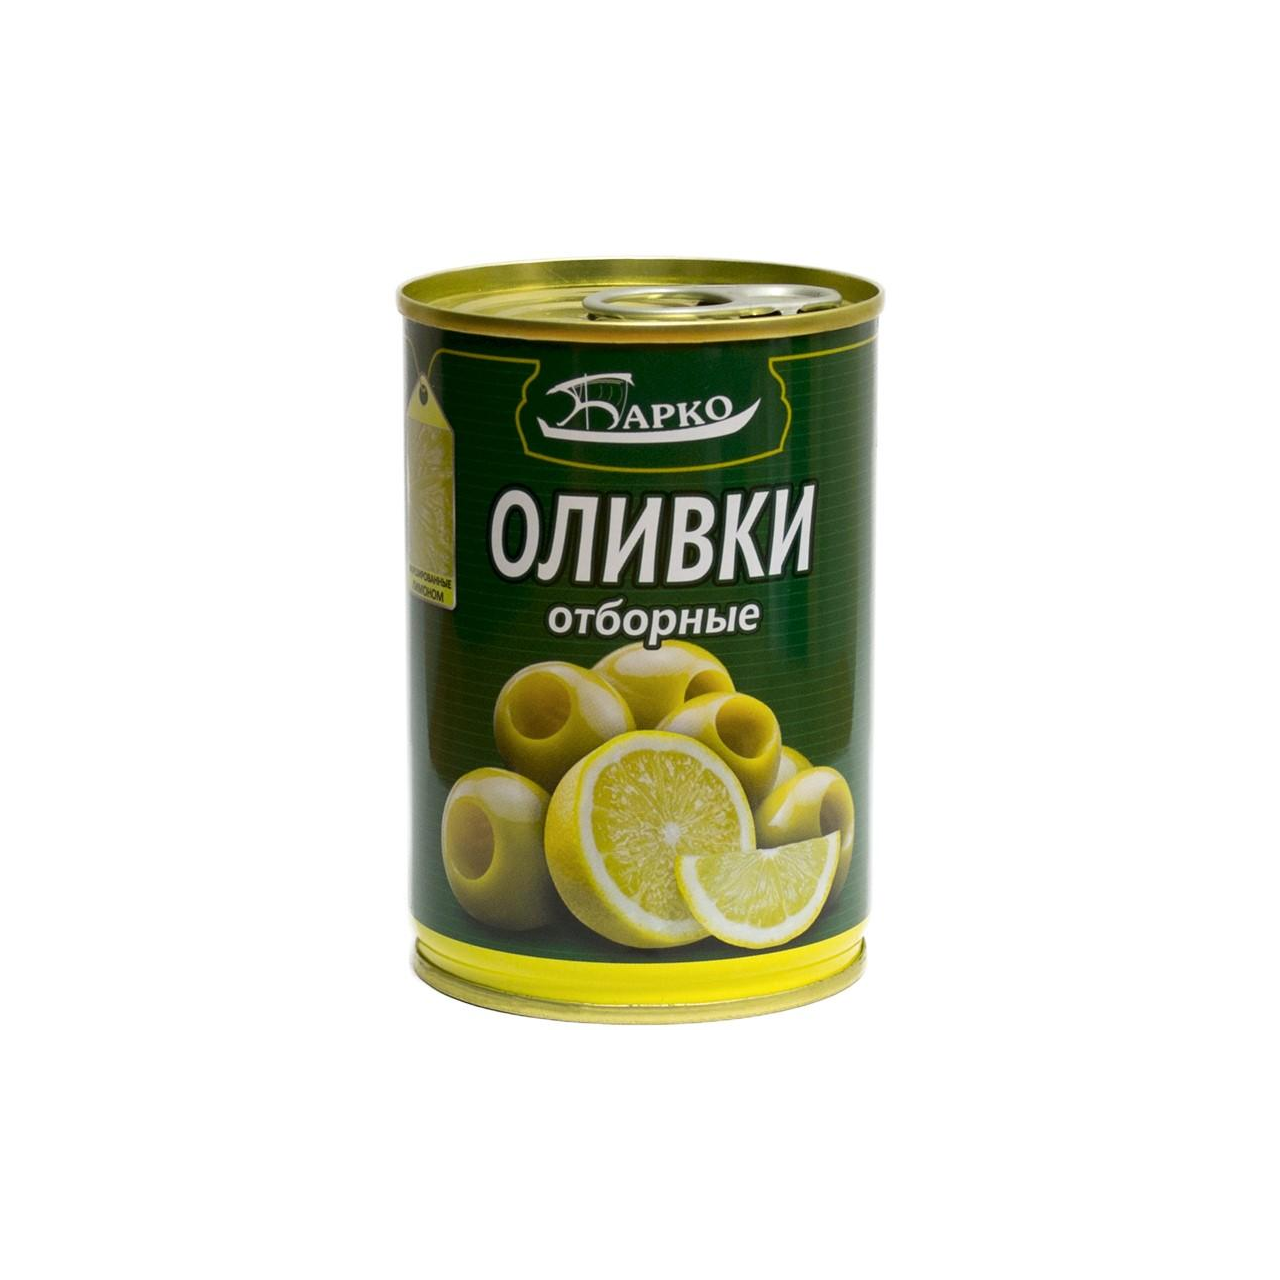 Оливки Барко 280 г ж/б с лимоном